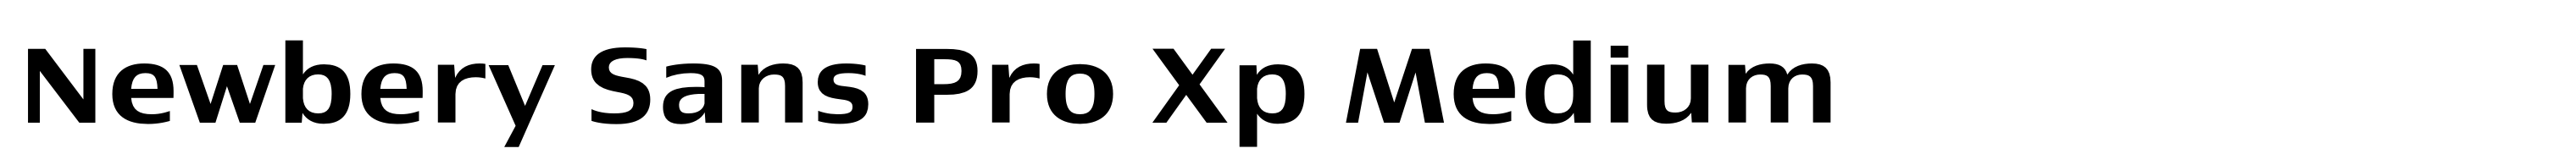 Newbery Sans Pro Xp Medium